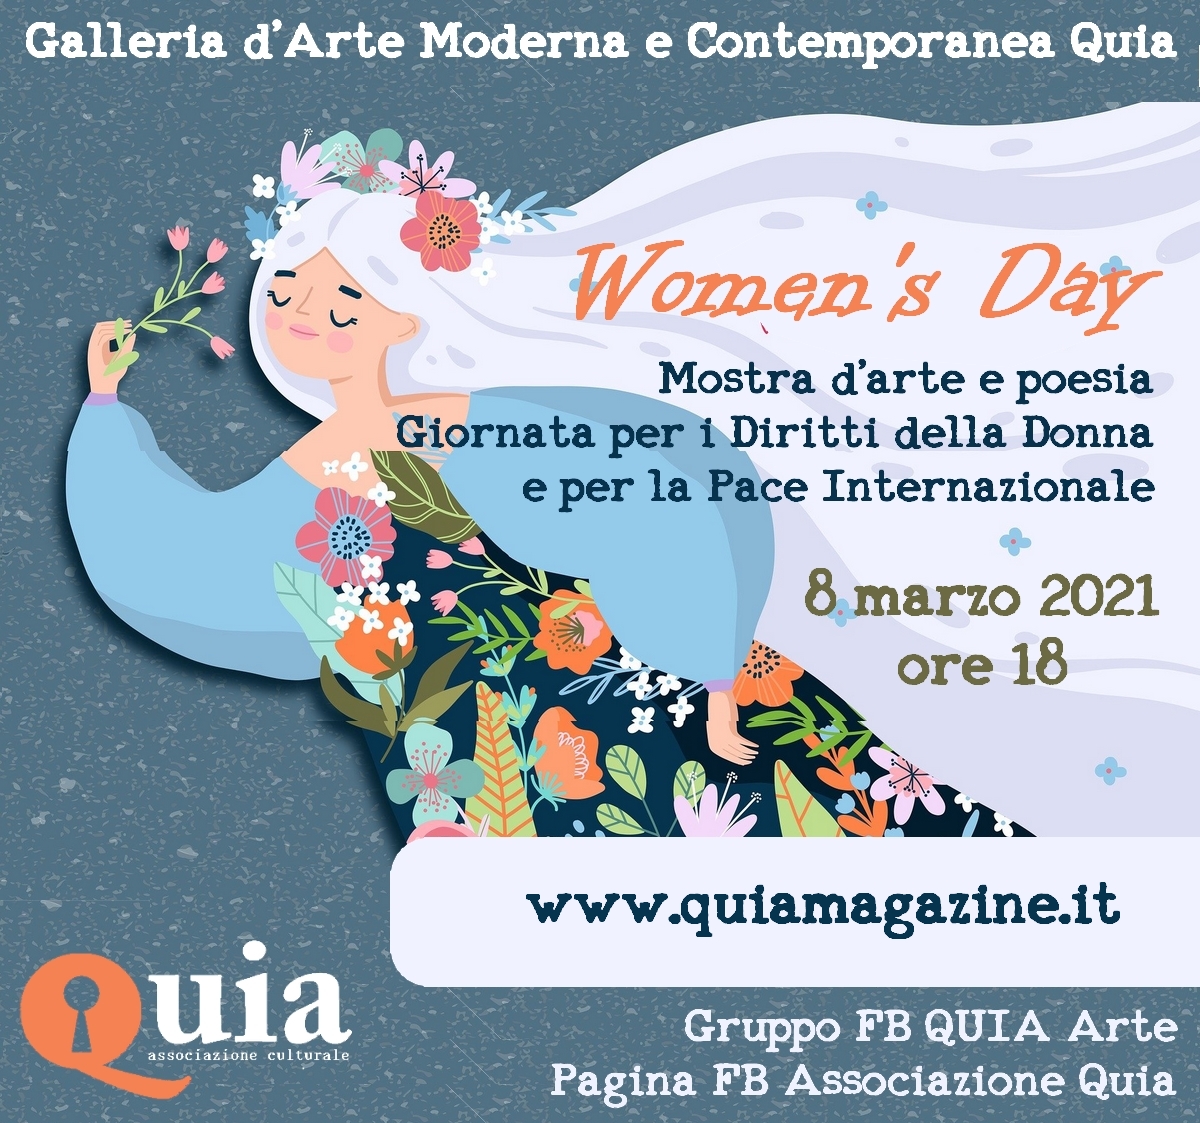 Mostra “Women’s Day – QUIA” – Giornata per i Diritti della Donna e la Pace Internazionale – ONU